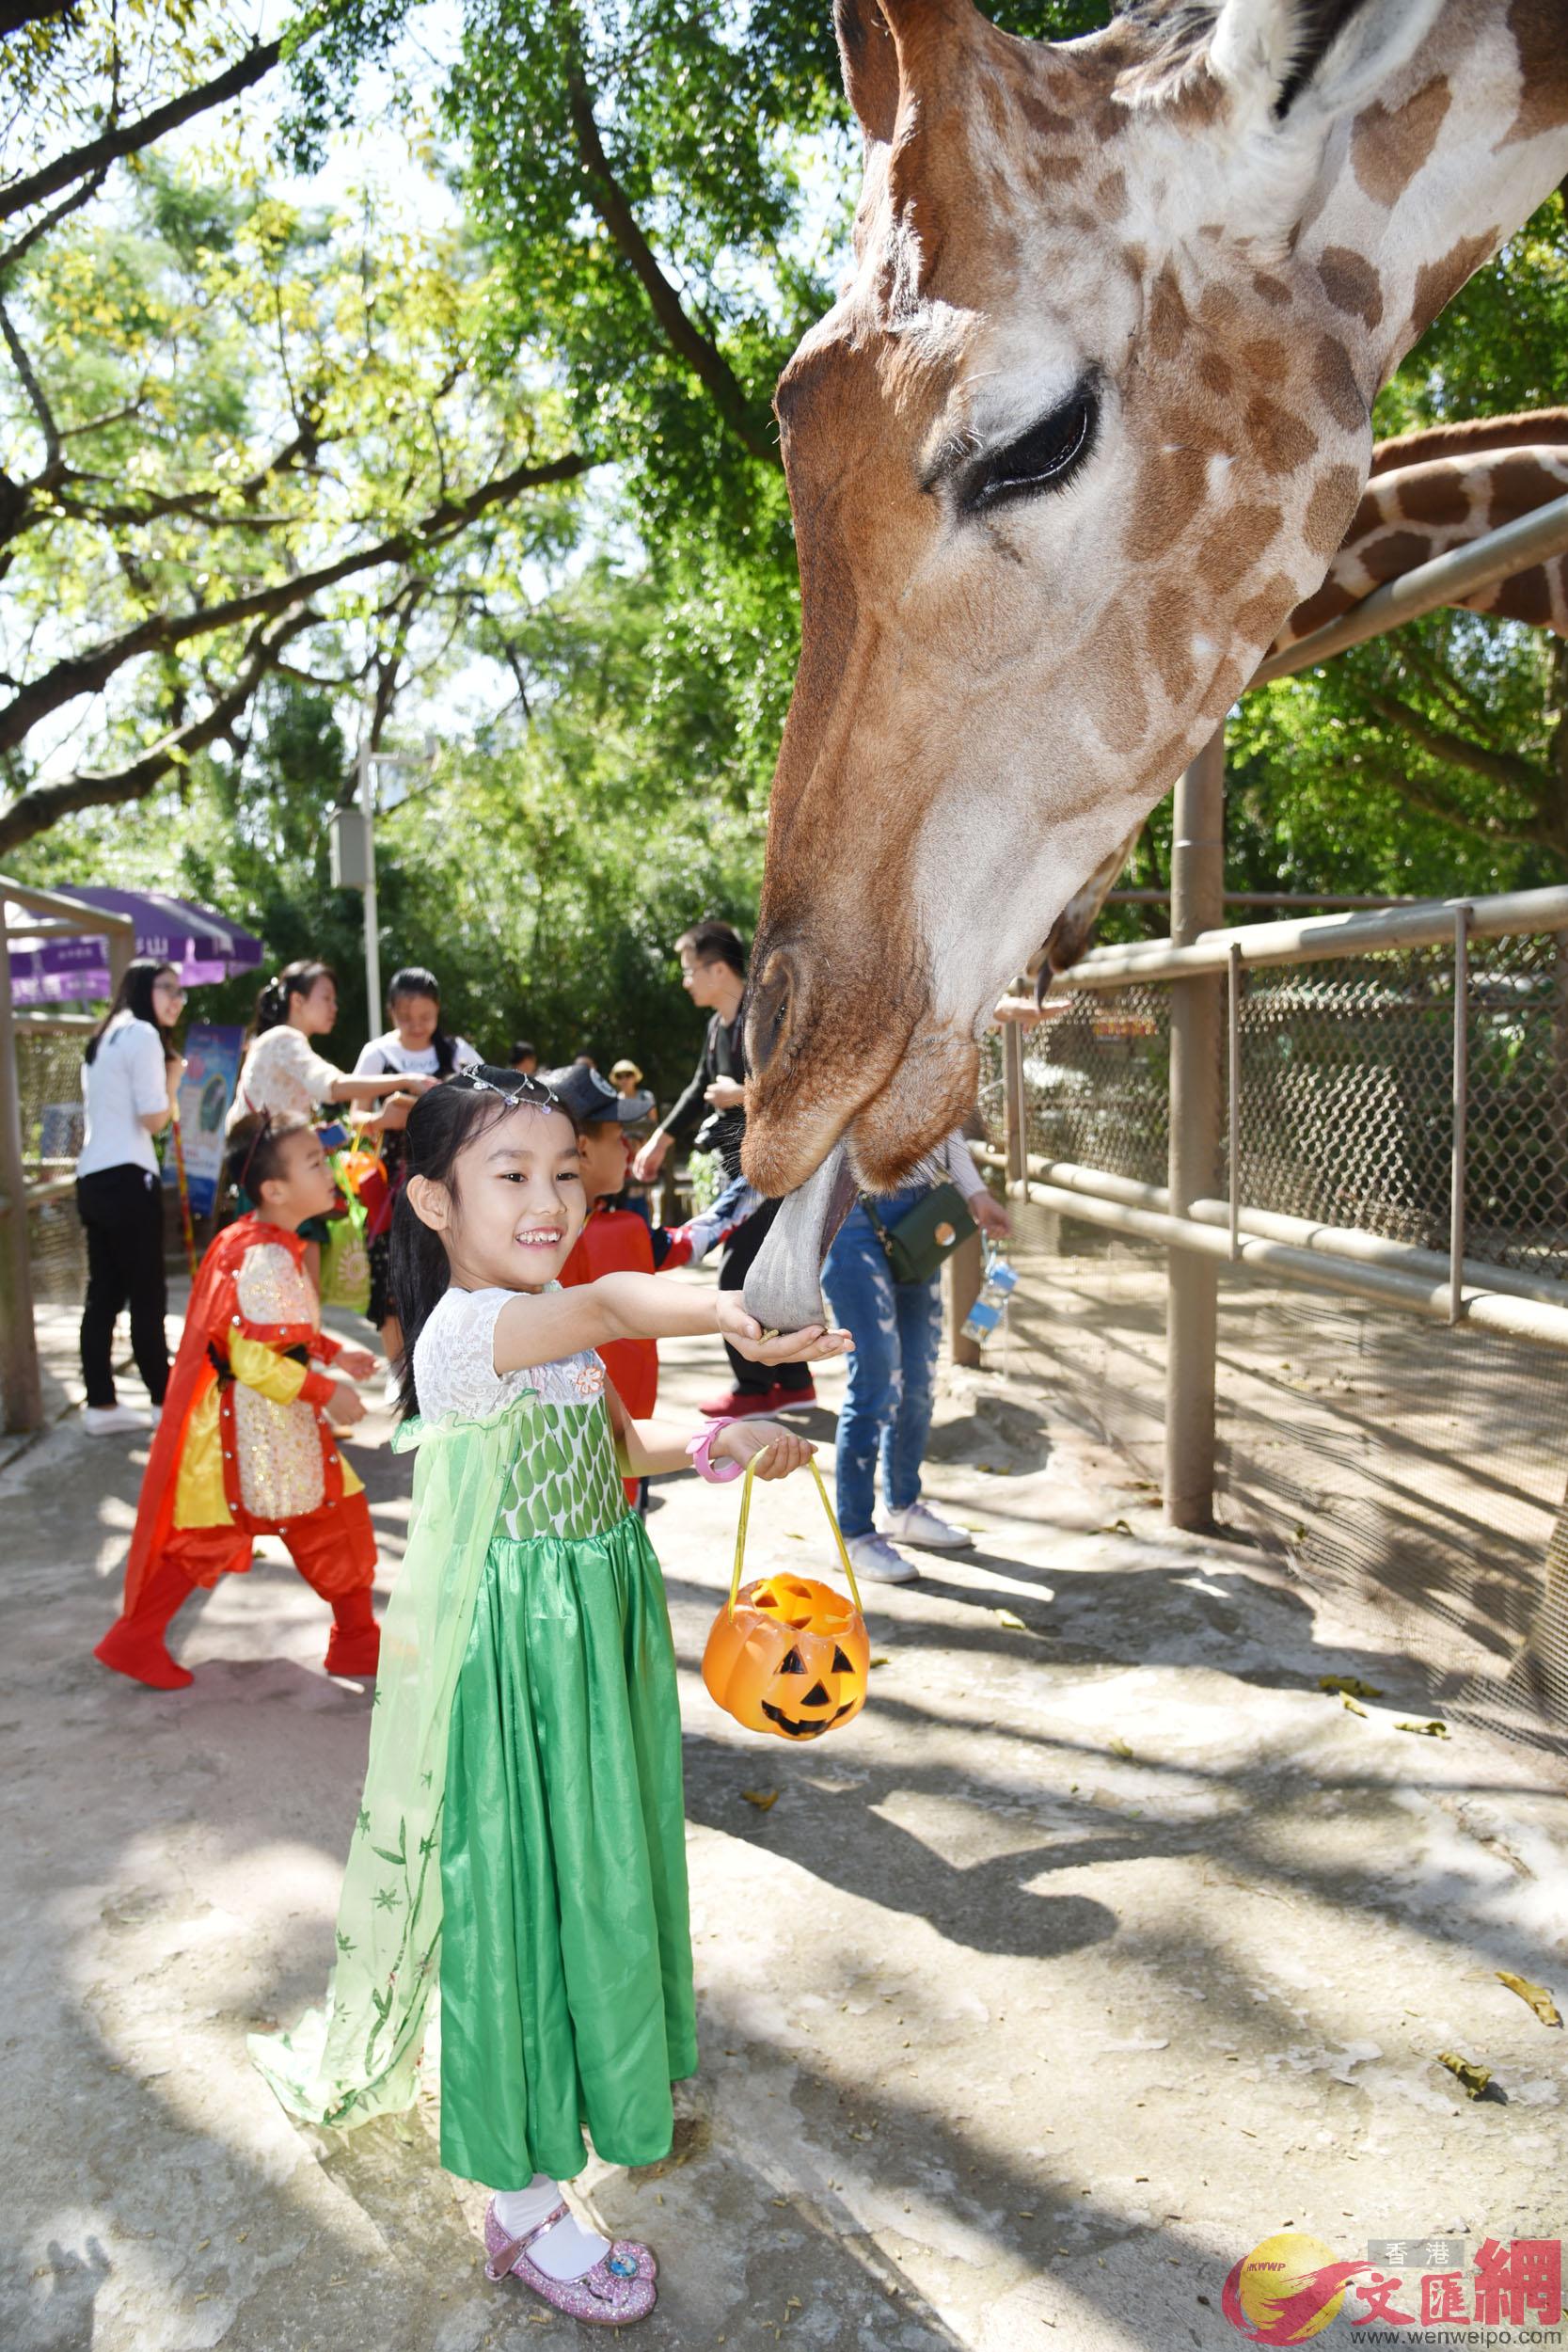 孩子們在深圳野生動物園裡興高采烈給遊客送糖果A與遊客歡樂互動C]郭若溪攝^